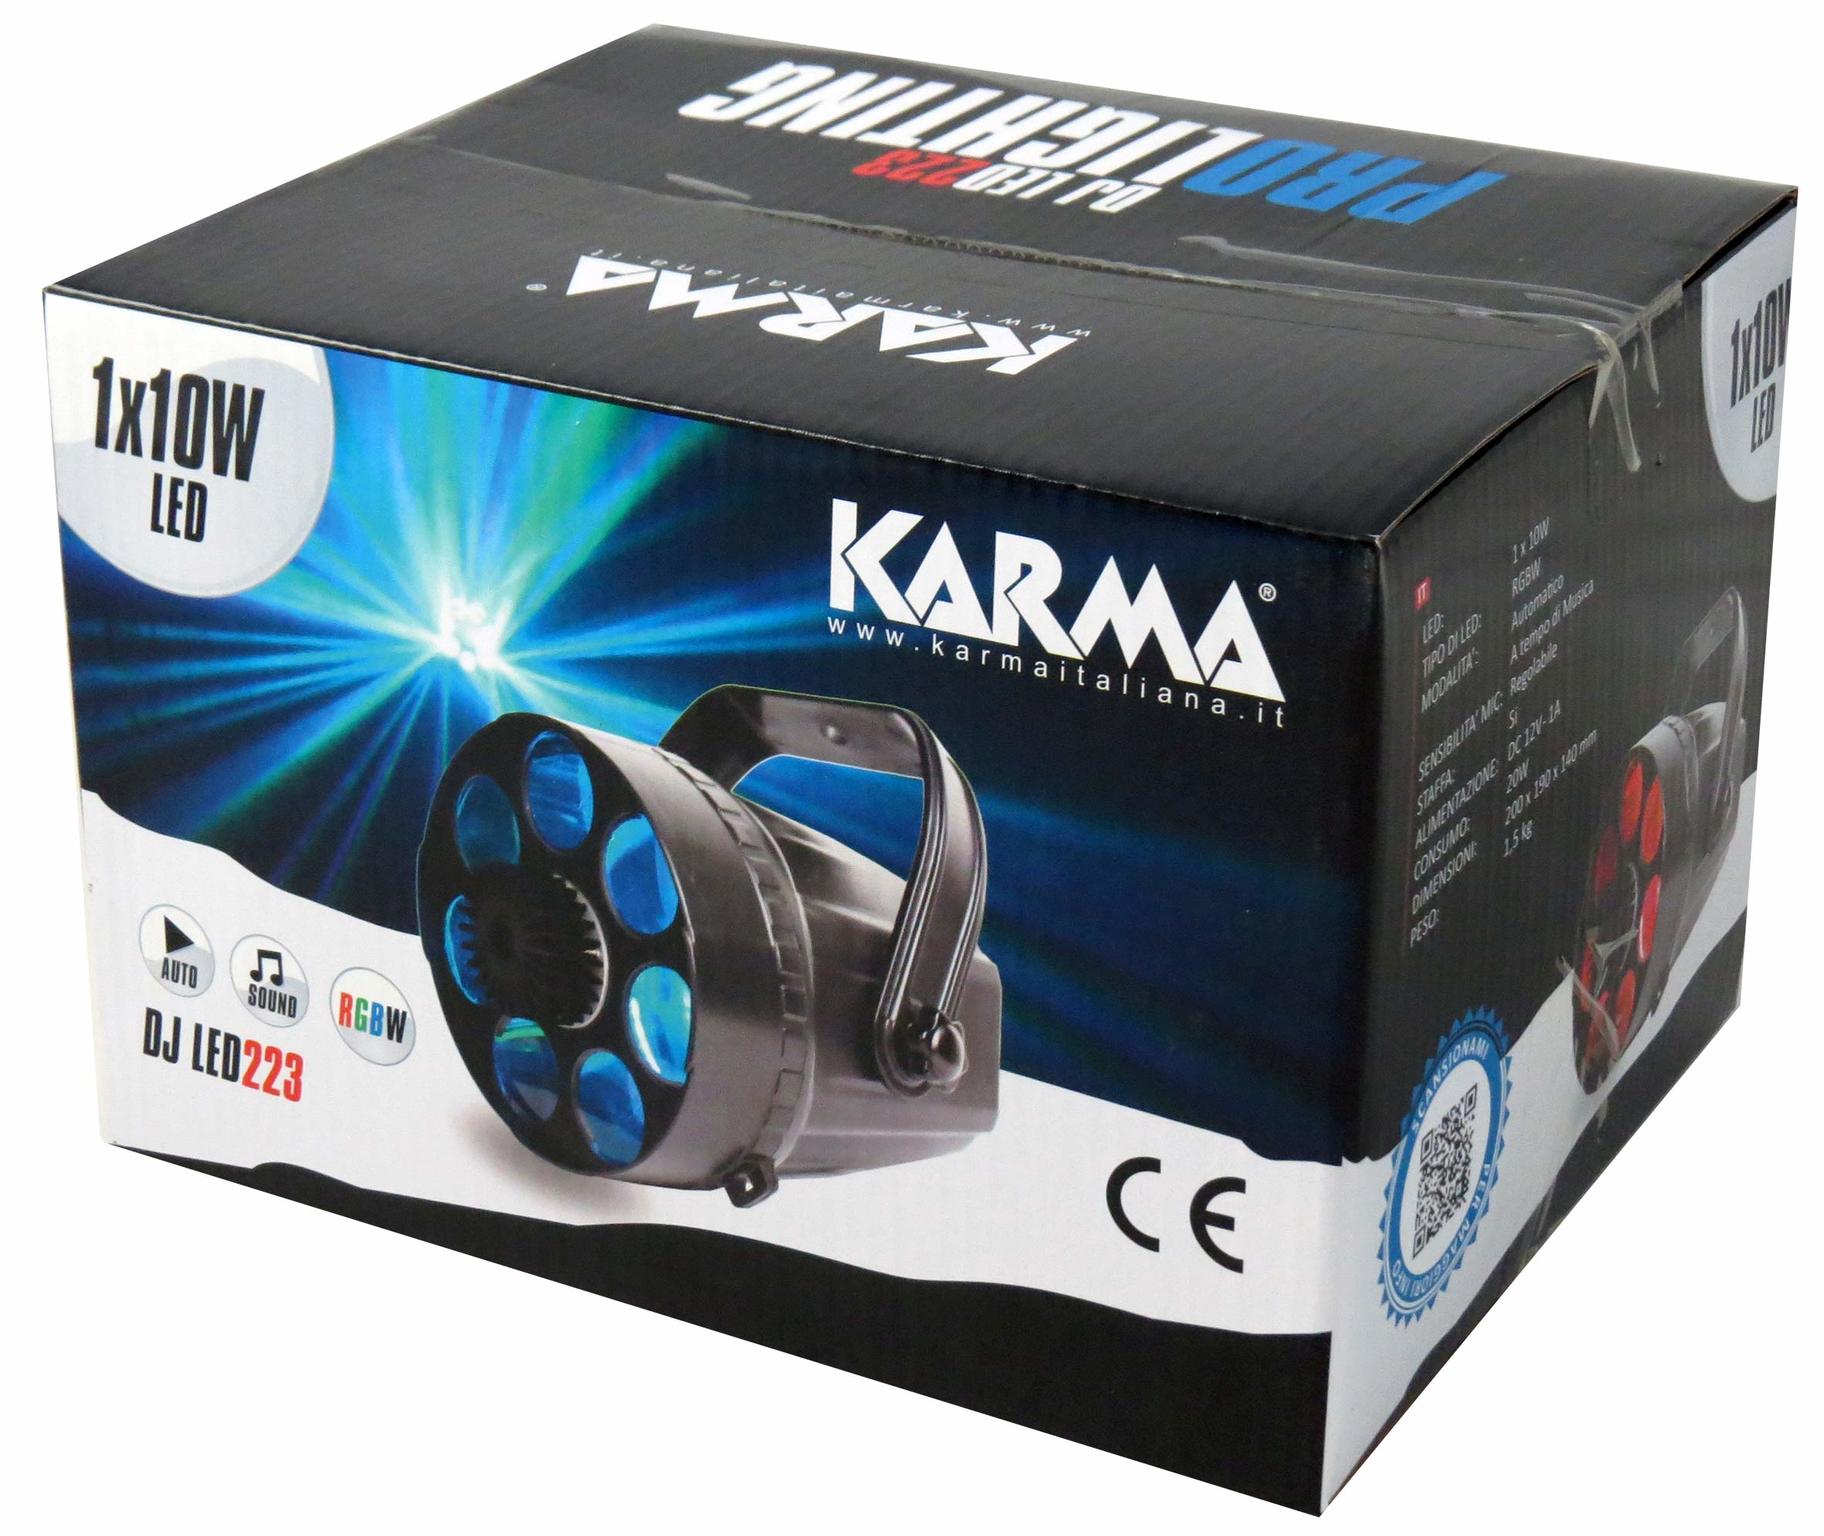 Karma DJ LED223